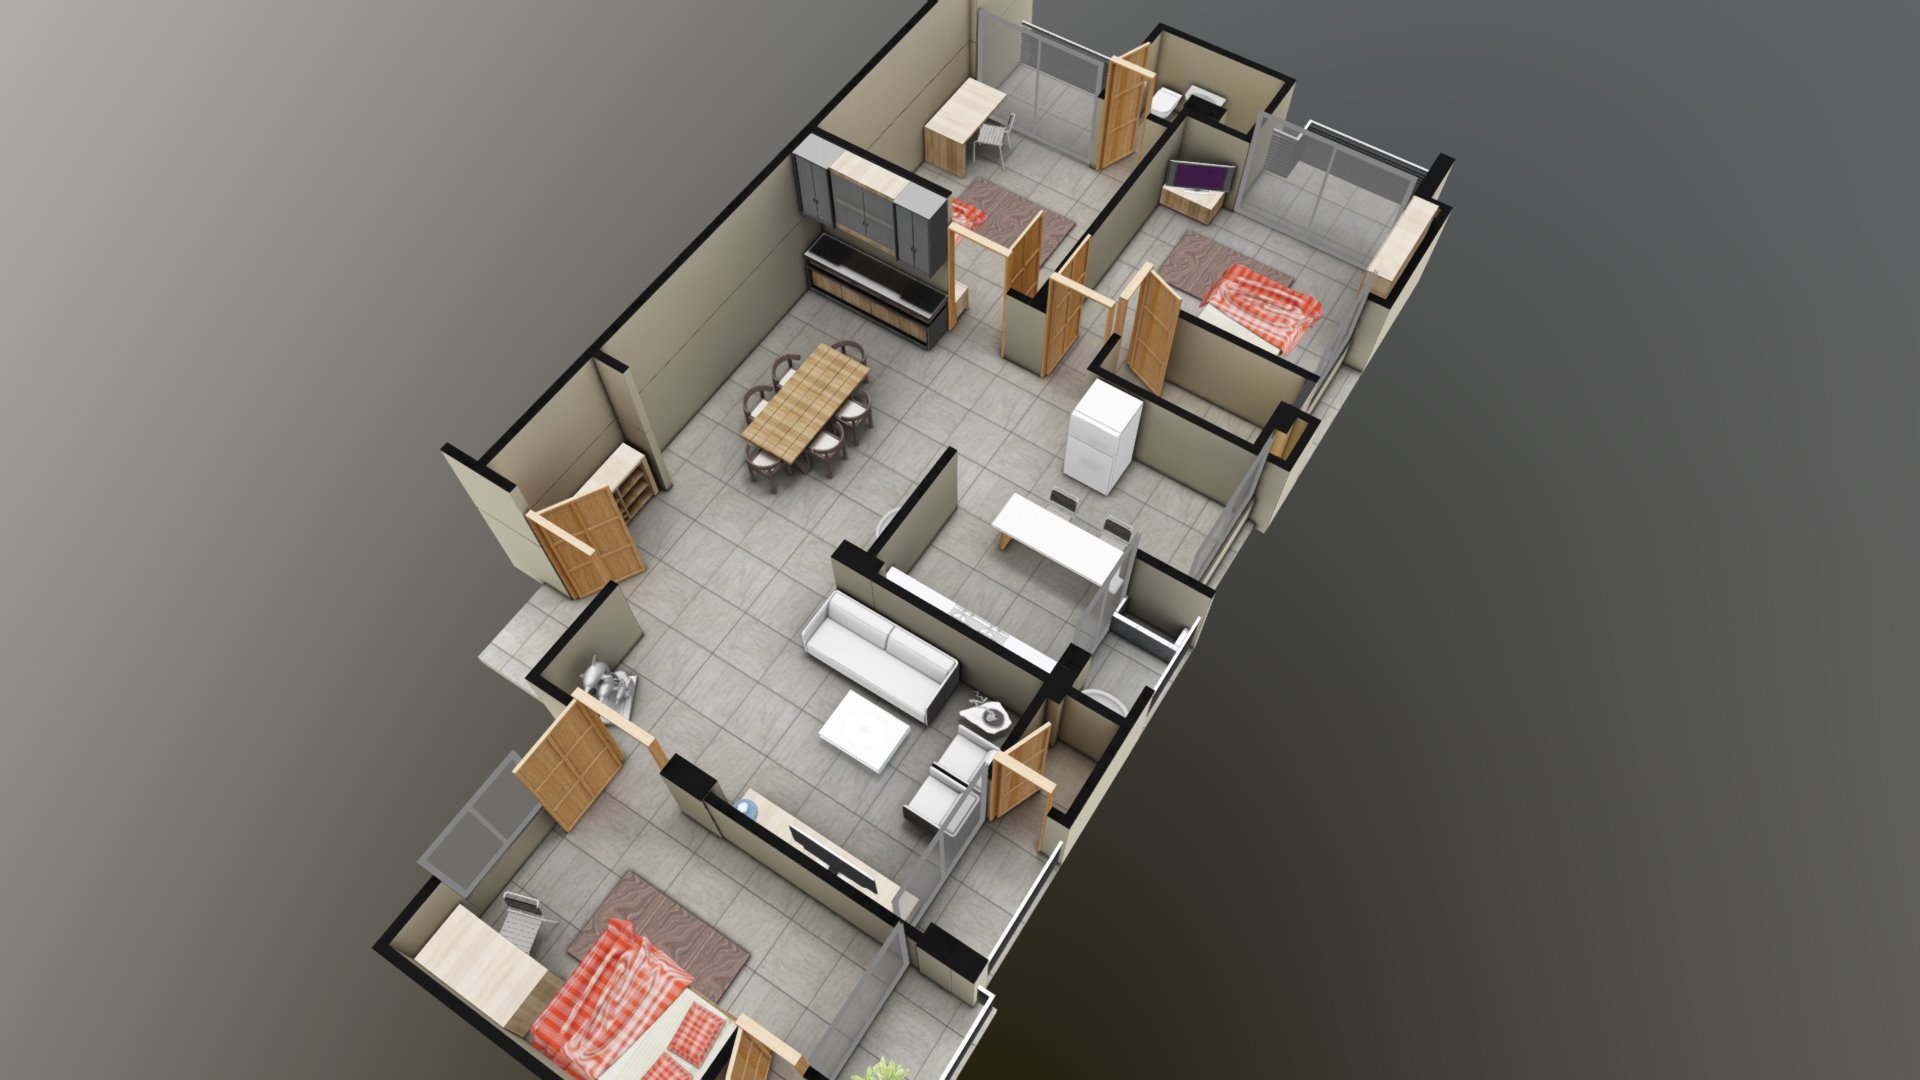 Apartment interior model